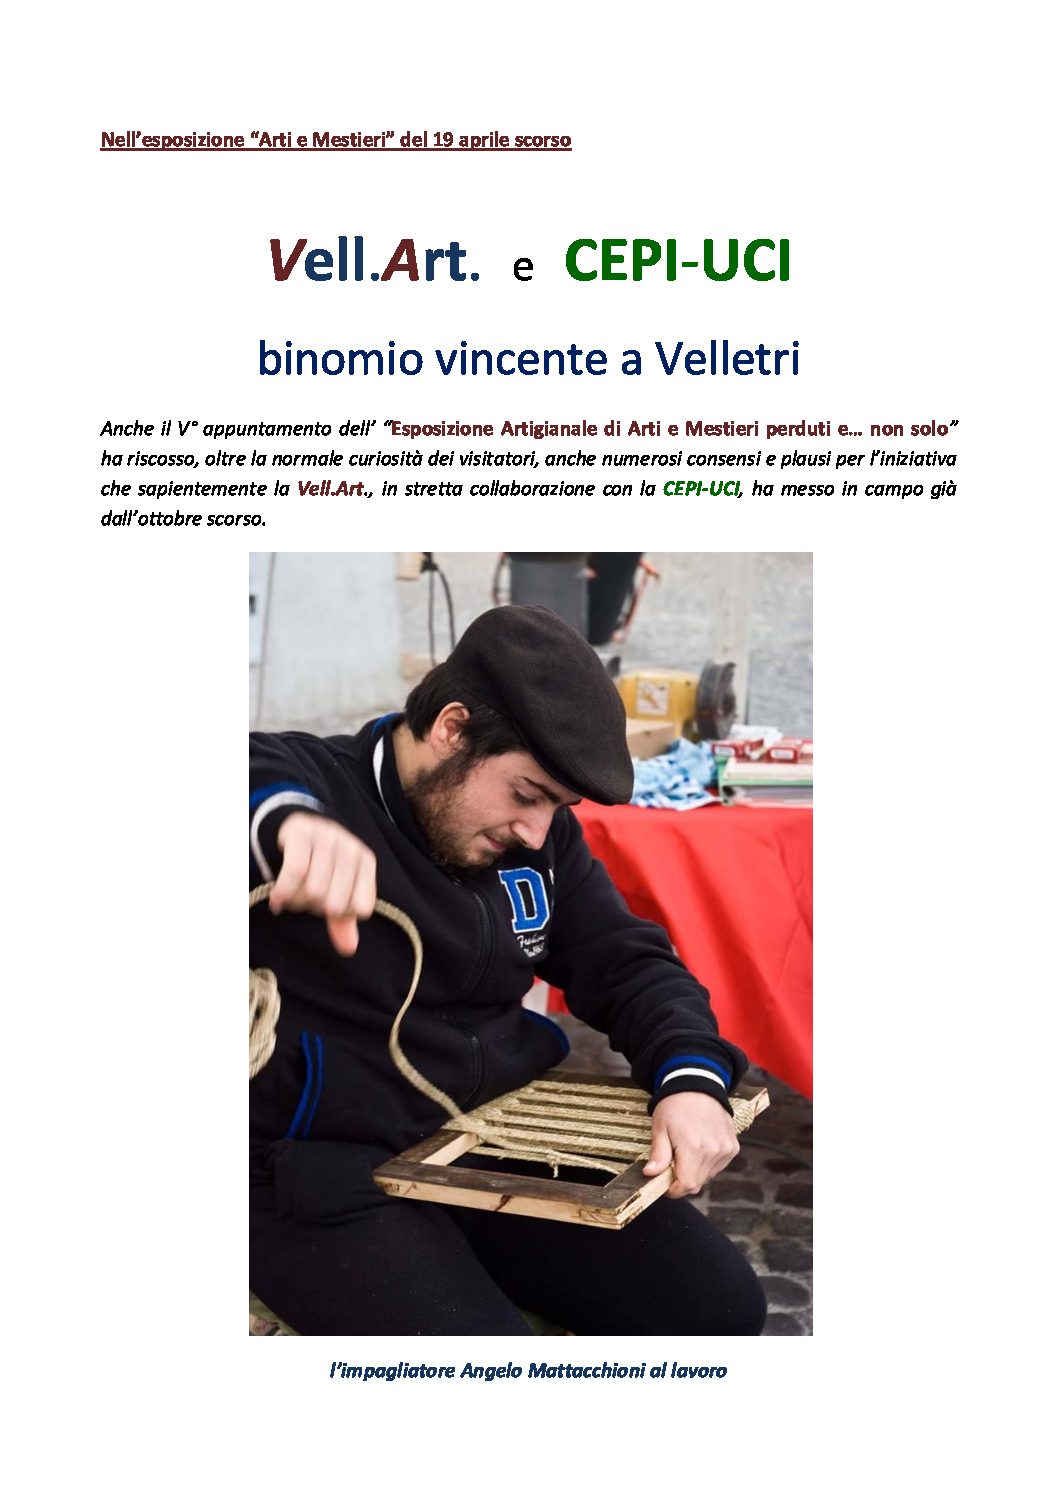 Vell.Art. e CEPI-UCI, binomio vincente a Velletri